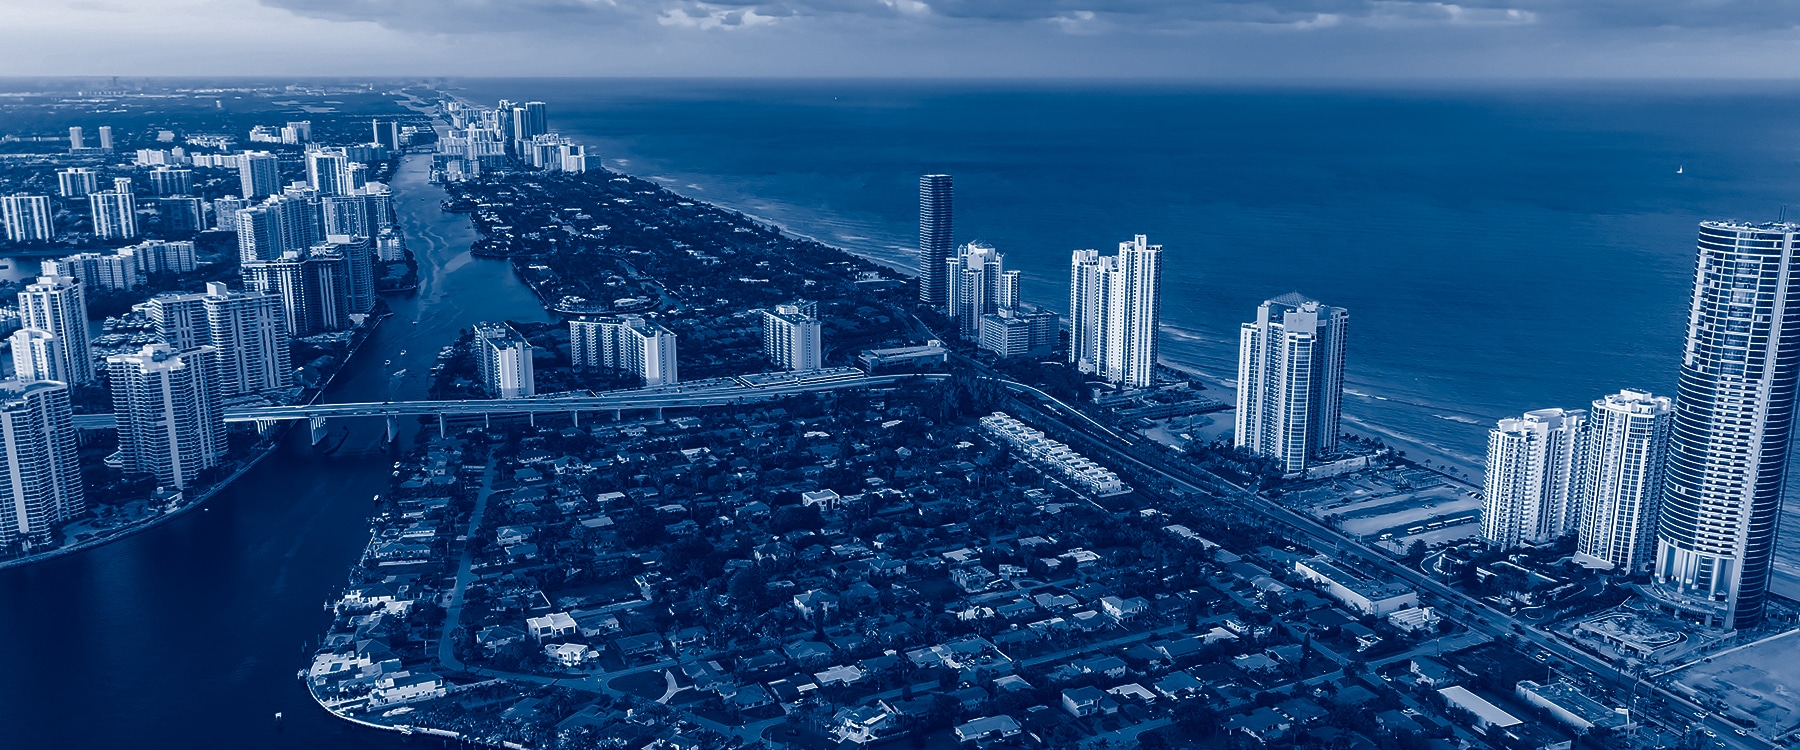 Best Public Relations (PR) Agency in Miami - BoardroomPR : boardroomPR